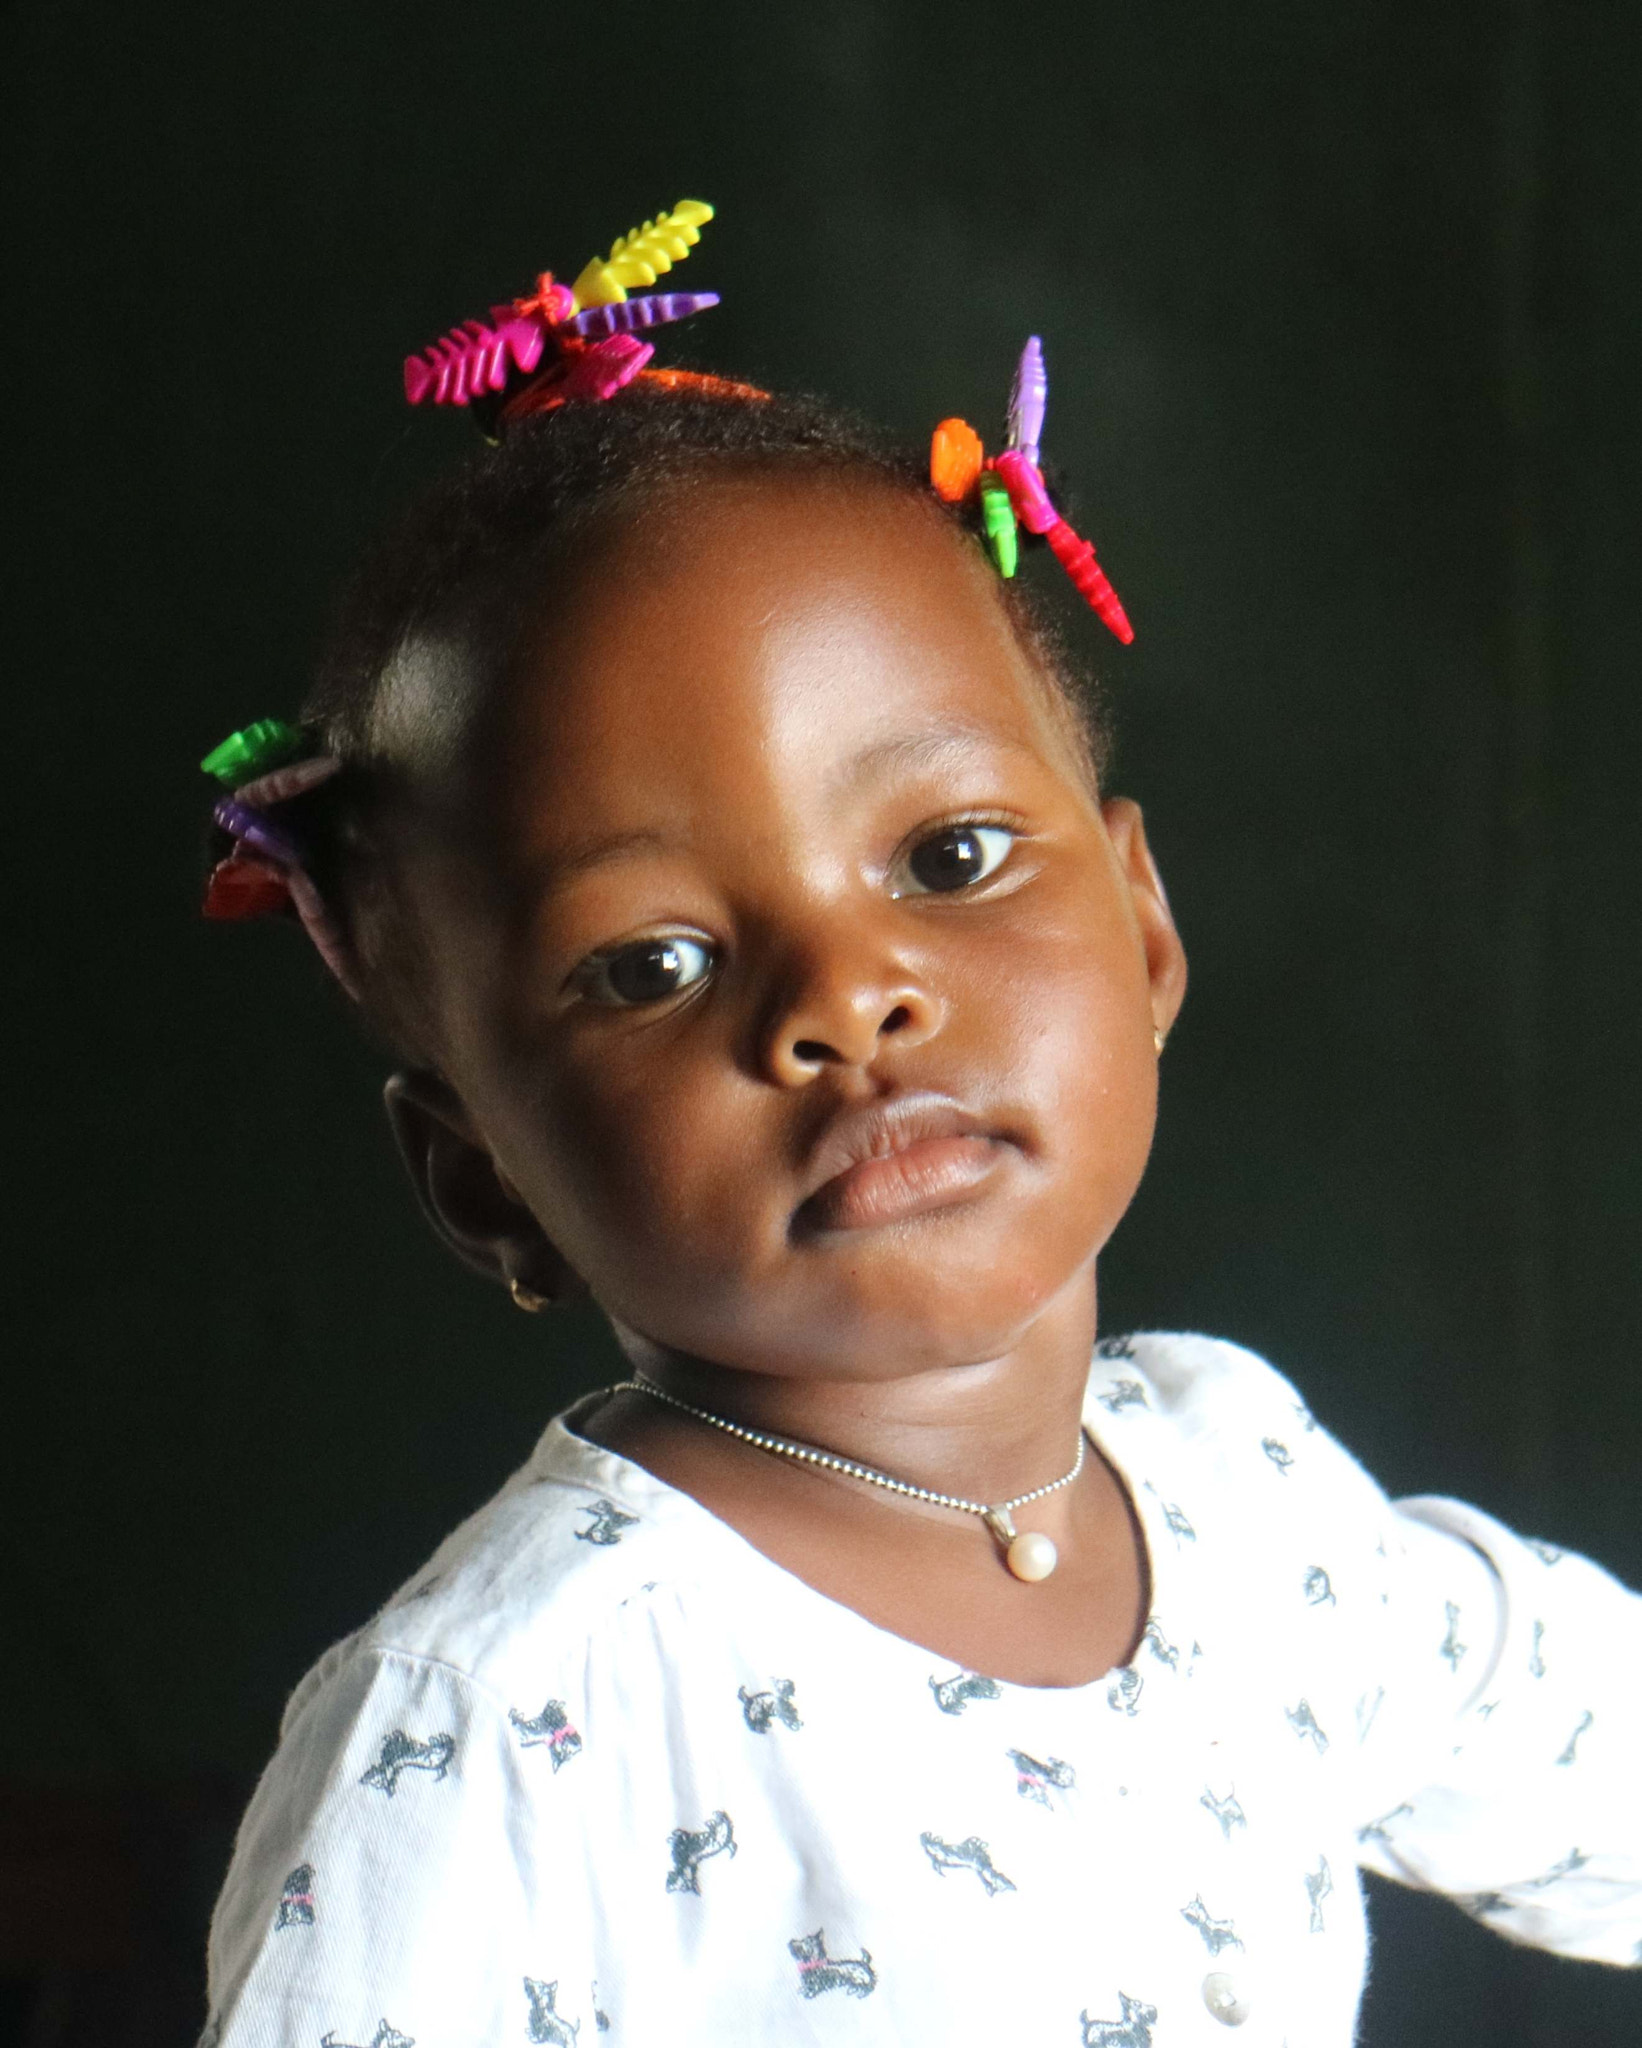 Canon EOS M3 sample photo. Naomi, little girl in tanzania photography